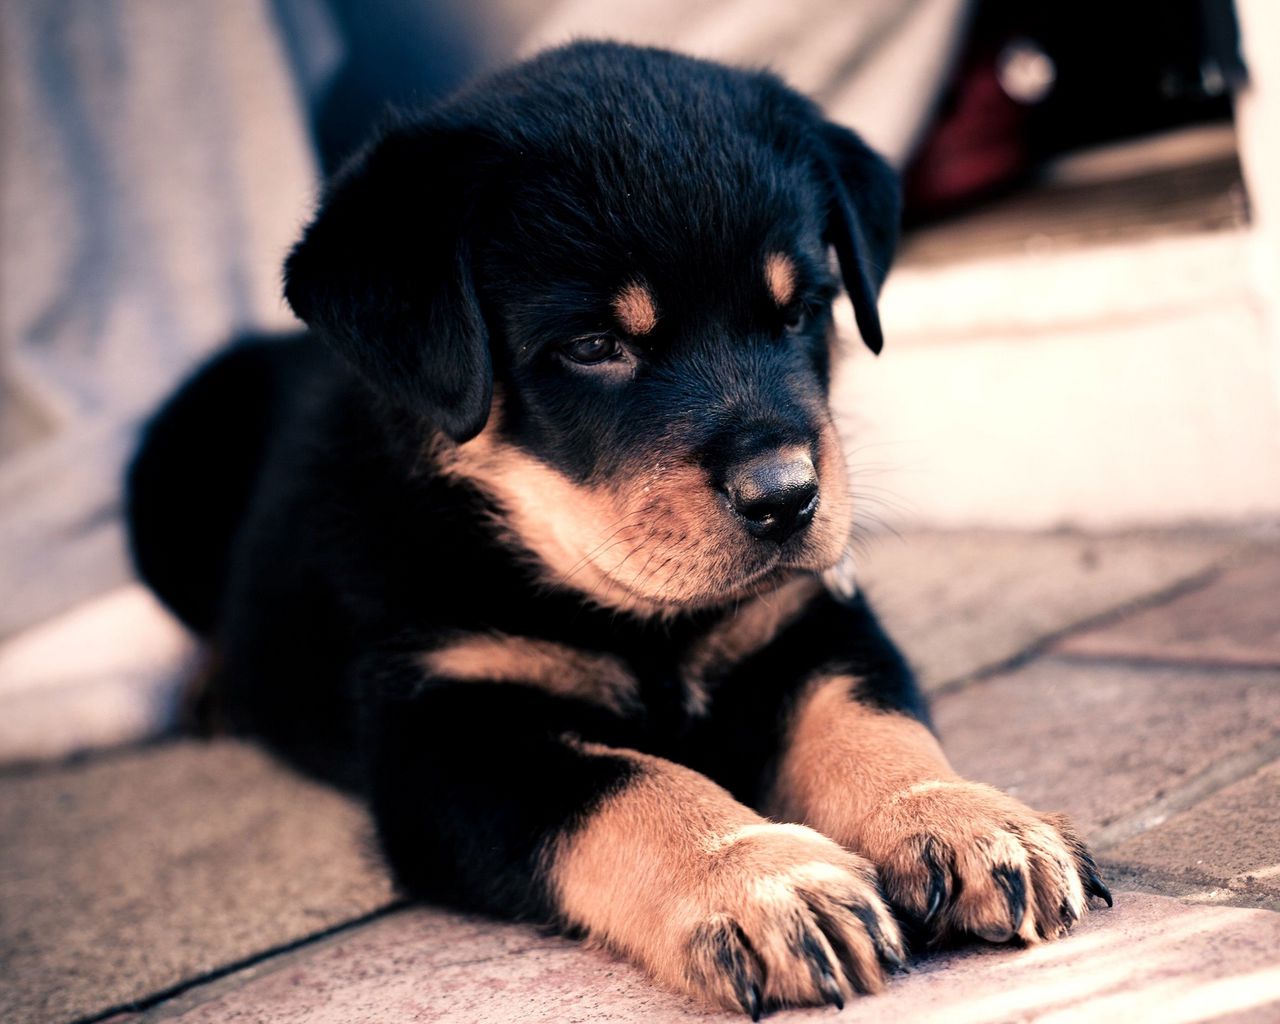 Những chú chó Rottweiler chắc chắn là một trong những giống chó yêu thích của rất nhiều người. Hình ảnh một chú chó nhỏ đáng yêu sẽ khiến bạn phải đốn tim và muốn có ngay một chú cún Rottweiler để làm bạn đời. Hãy tới xem hình ảnh này để cảm nhận sự đáng yêu của loài chó nho nhỏ này.